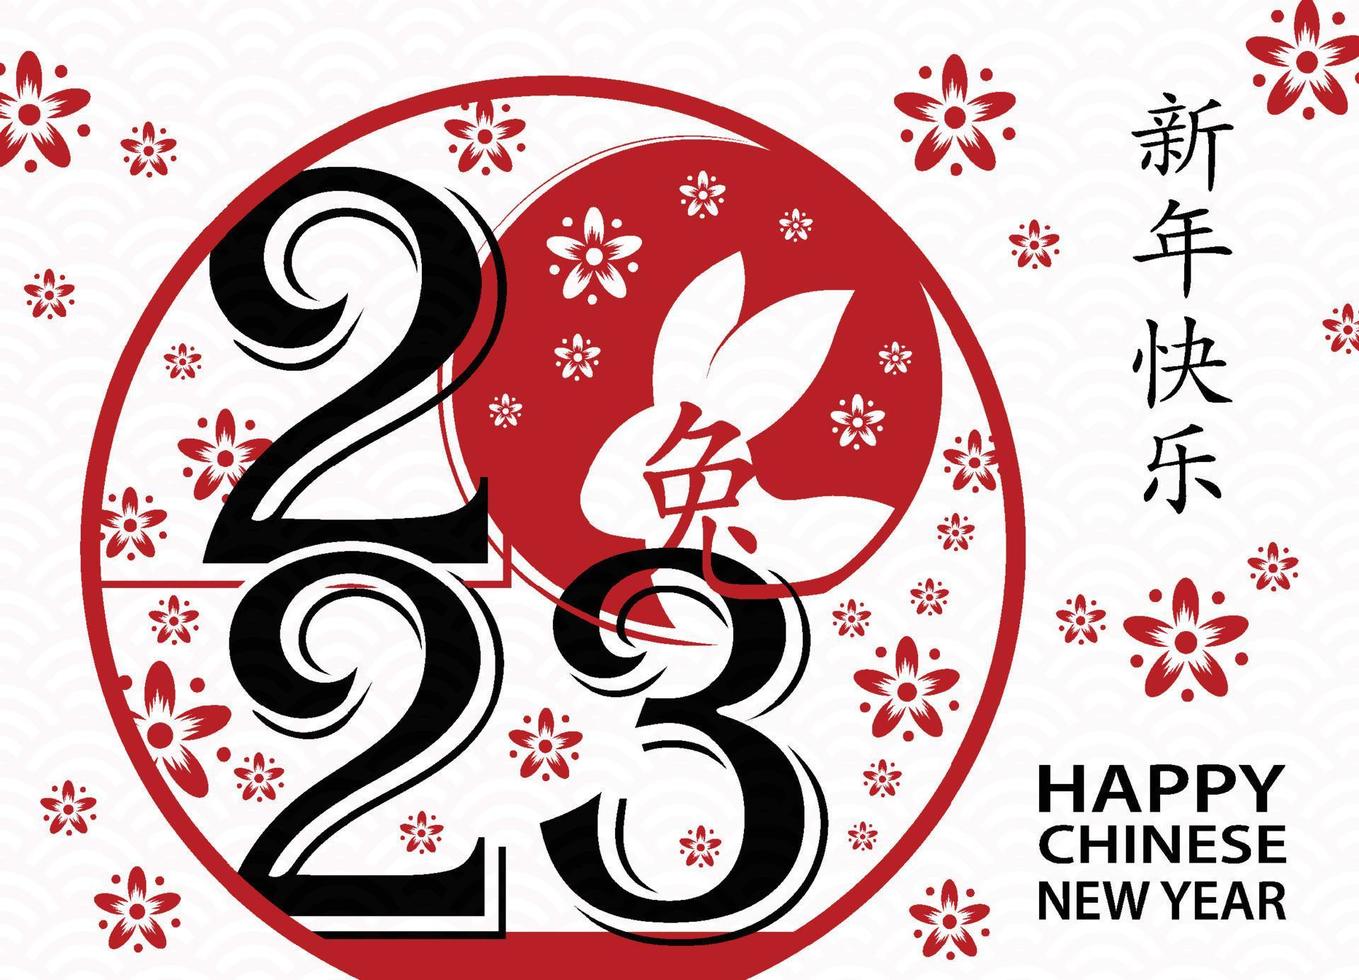 feliz año nuevo chino 2023 signo del zodiaco, año del conejo vector